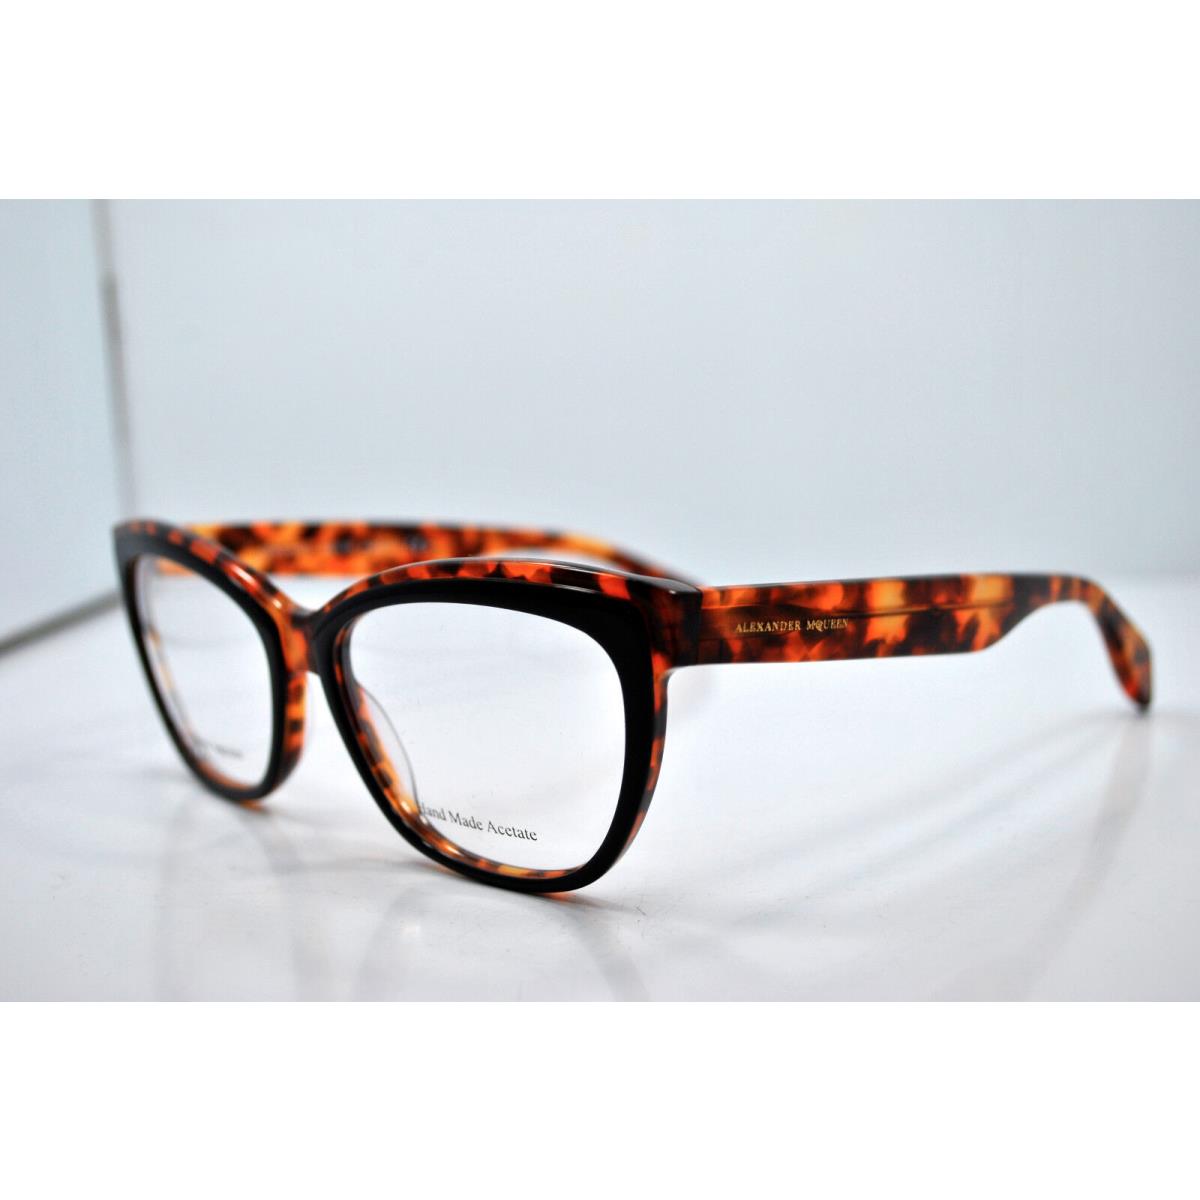 Alexander Mqueen AMQ4249 8JM Eyeglasses Frames